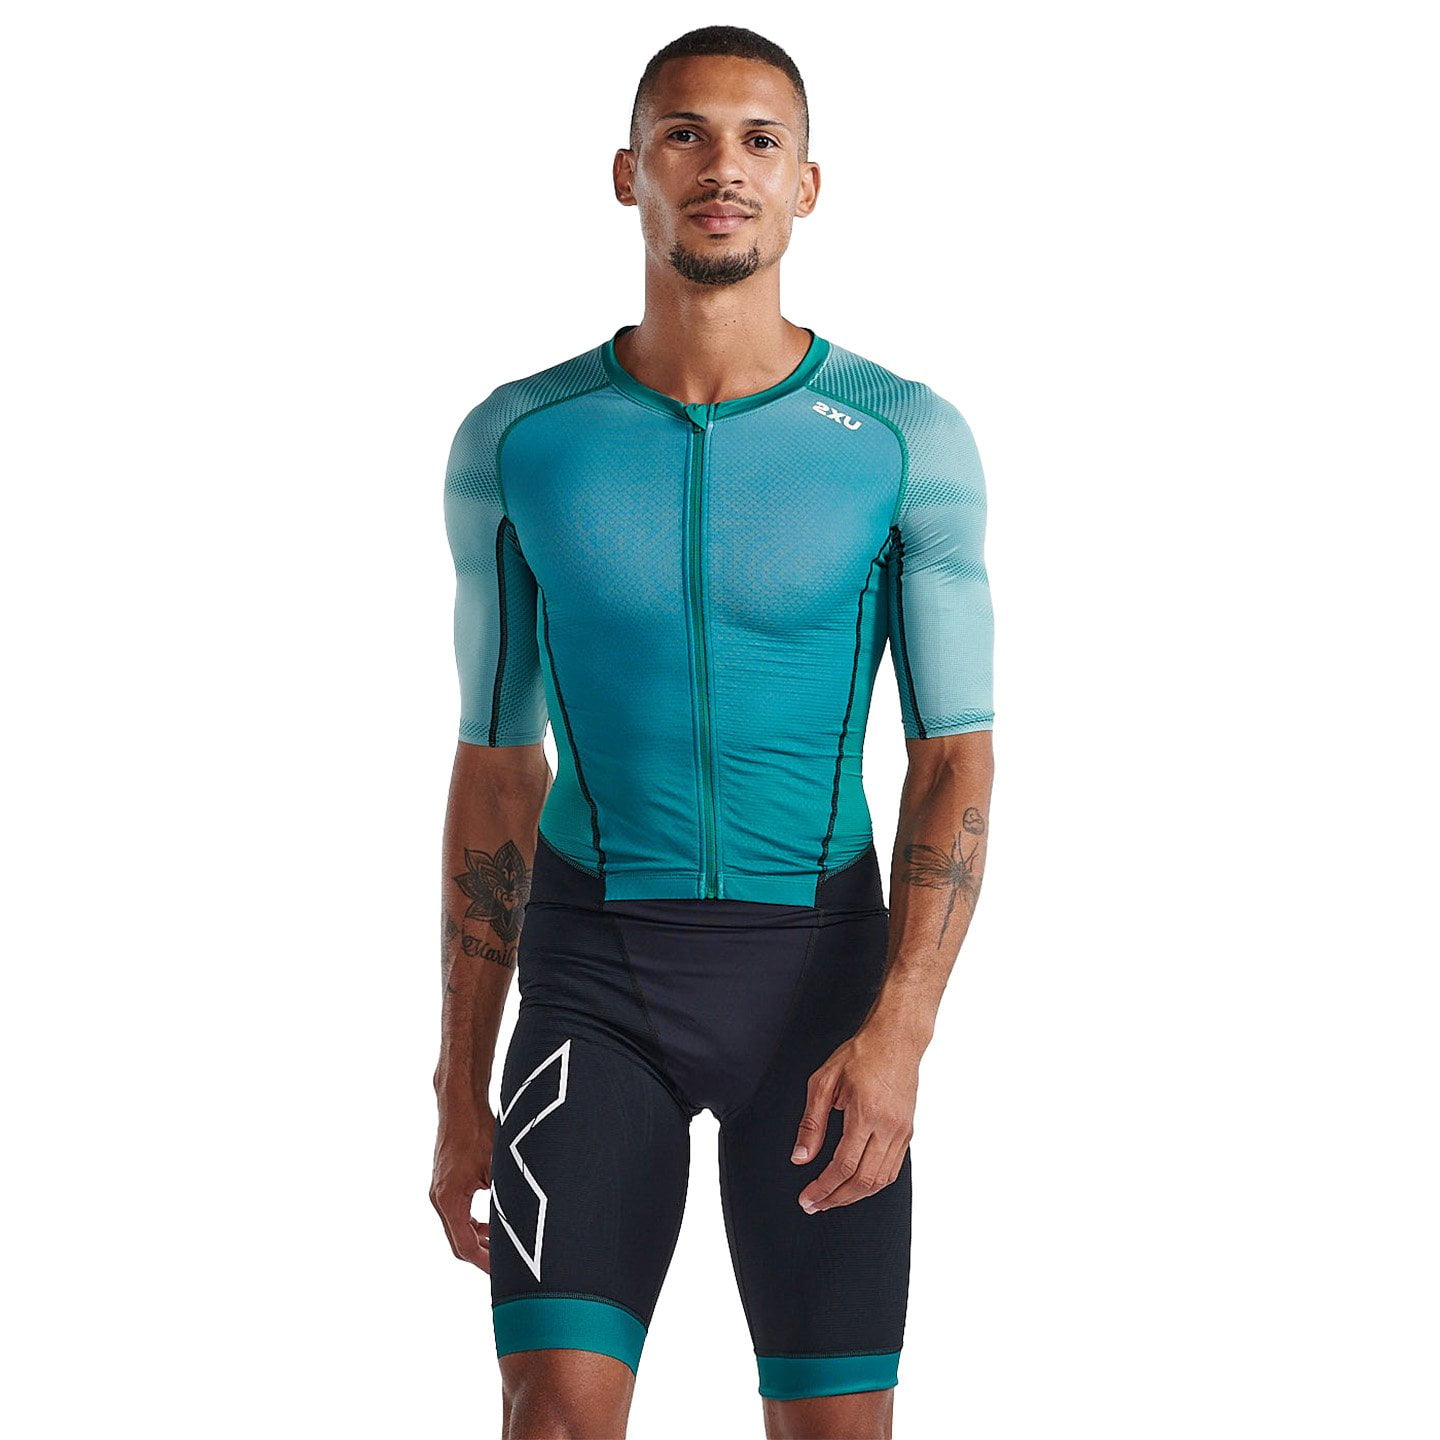 2XU Light Speed Tri Suit Tri Suit, for men, size M, Triathlon suit, Triathlon clothes